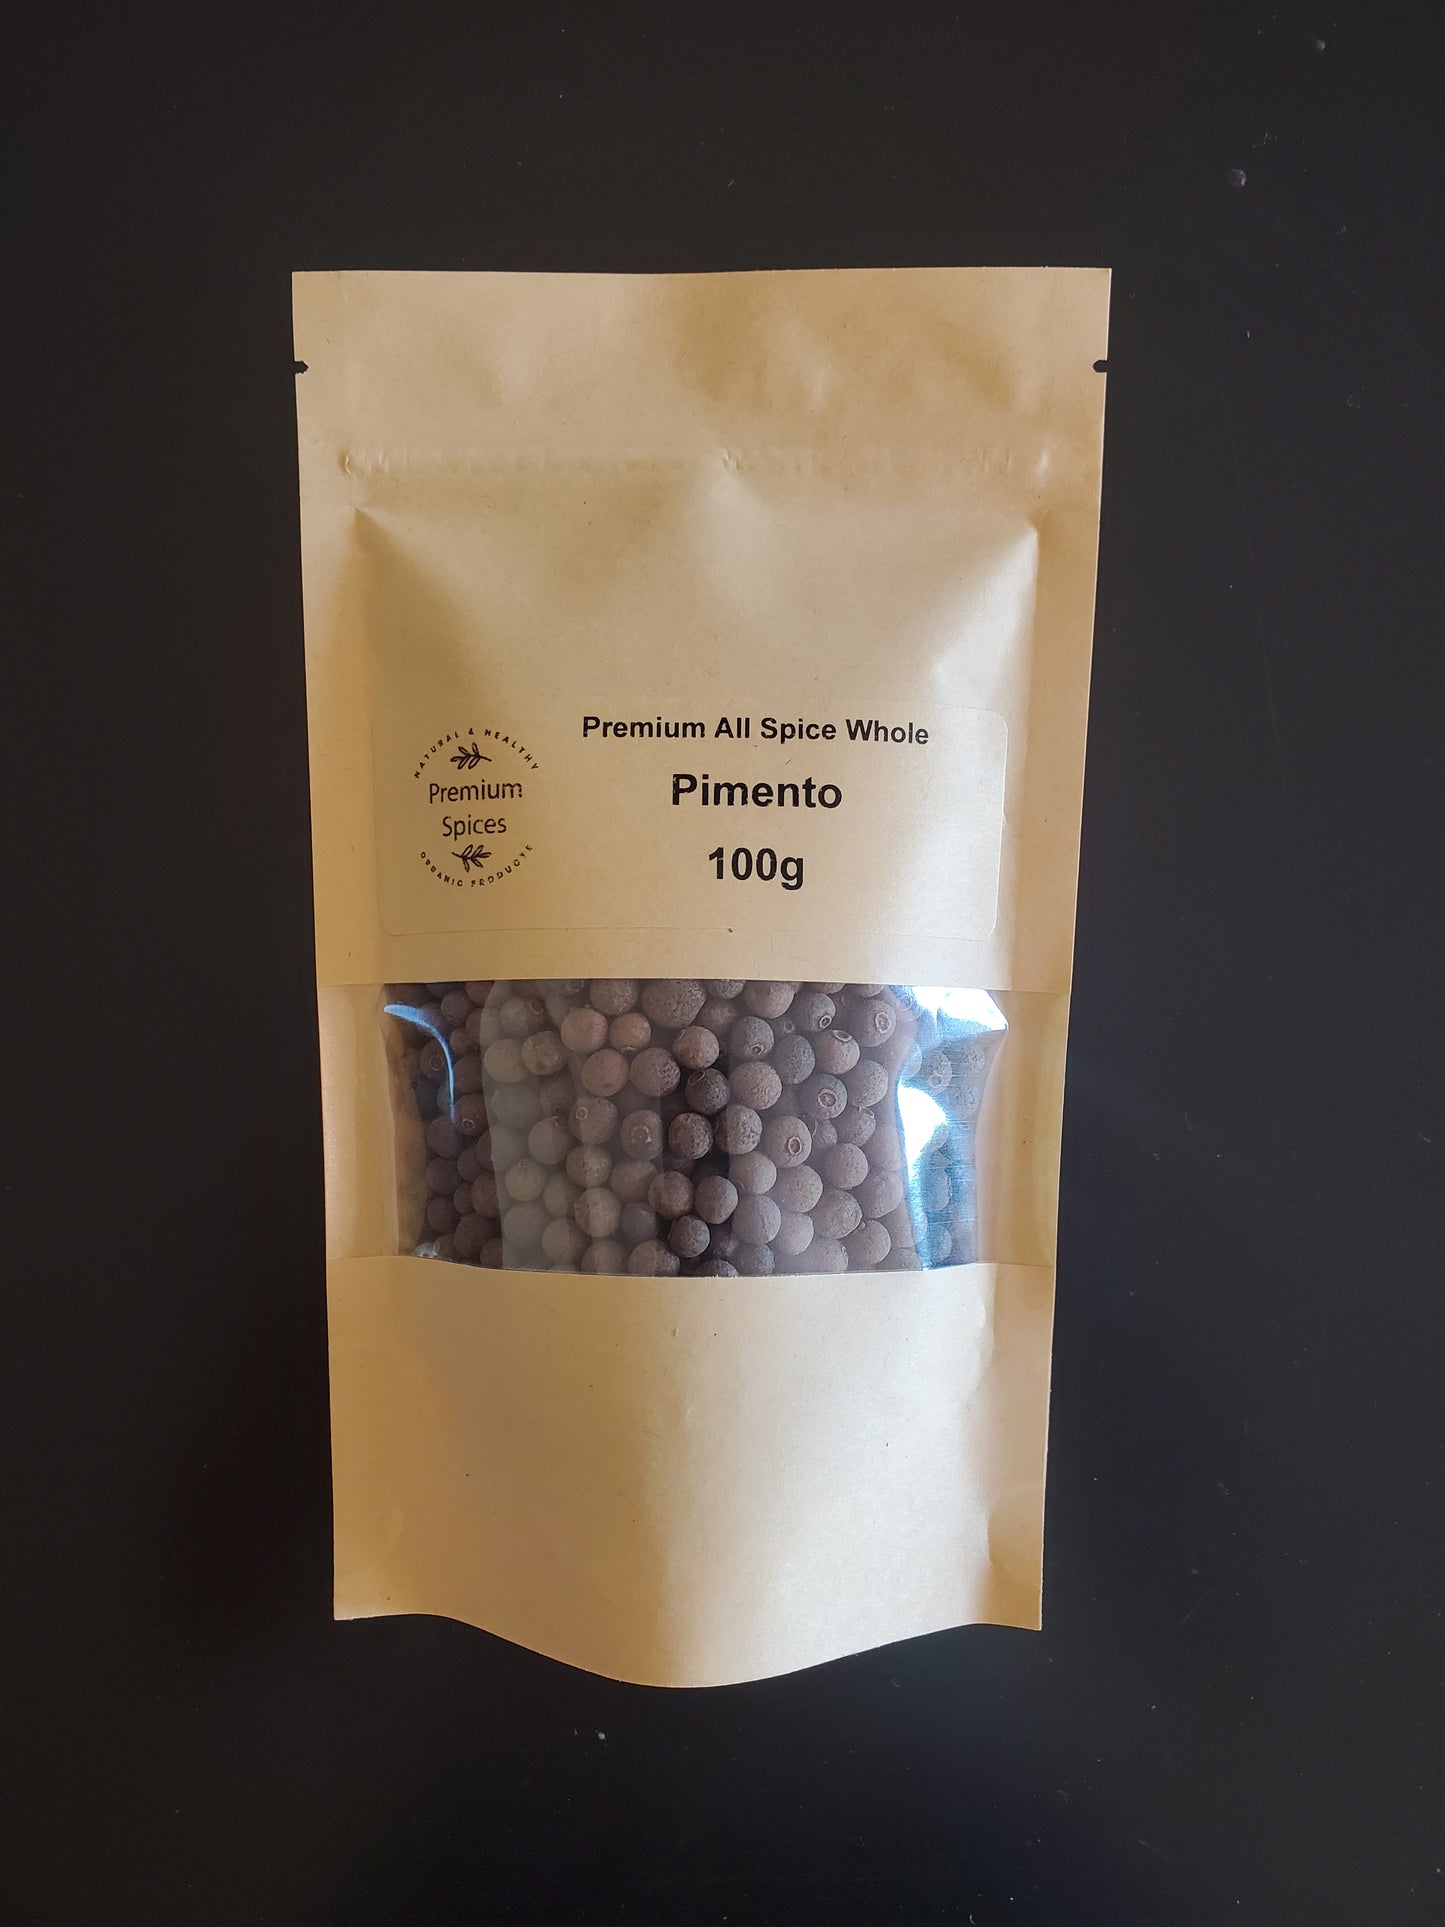 Premium All Spice Whole - Pimento